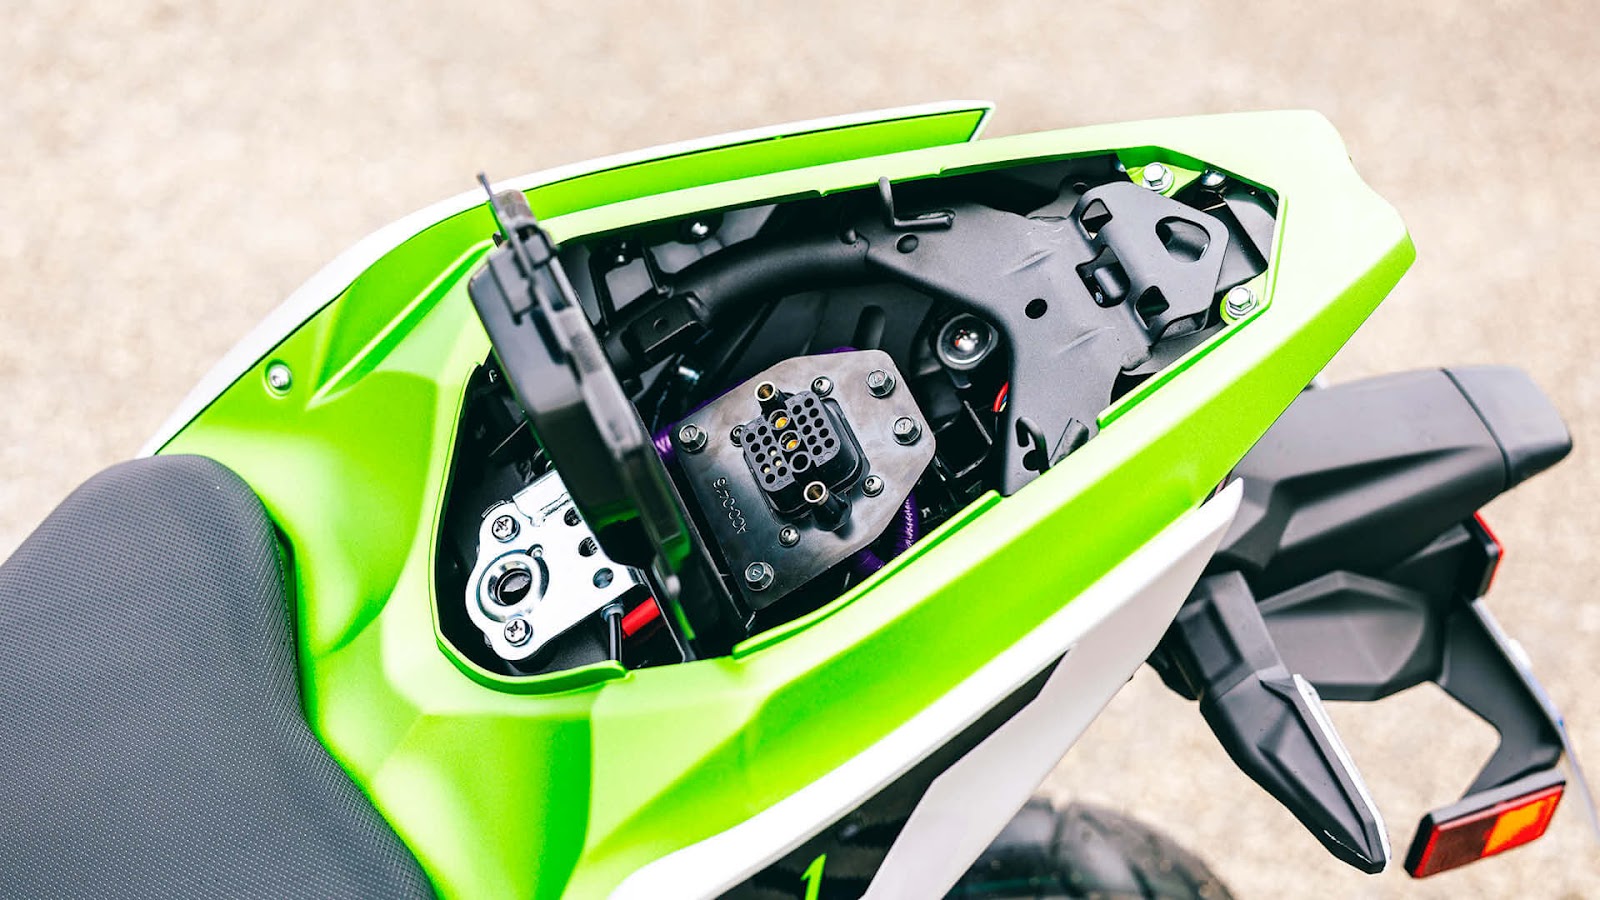 Se pretendermos carregar as baterias diretamente na moto então é aqui que teremos de ligar o carregador.